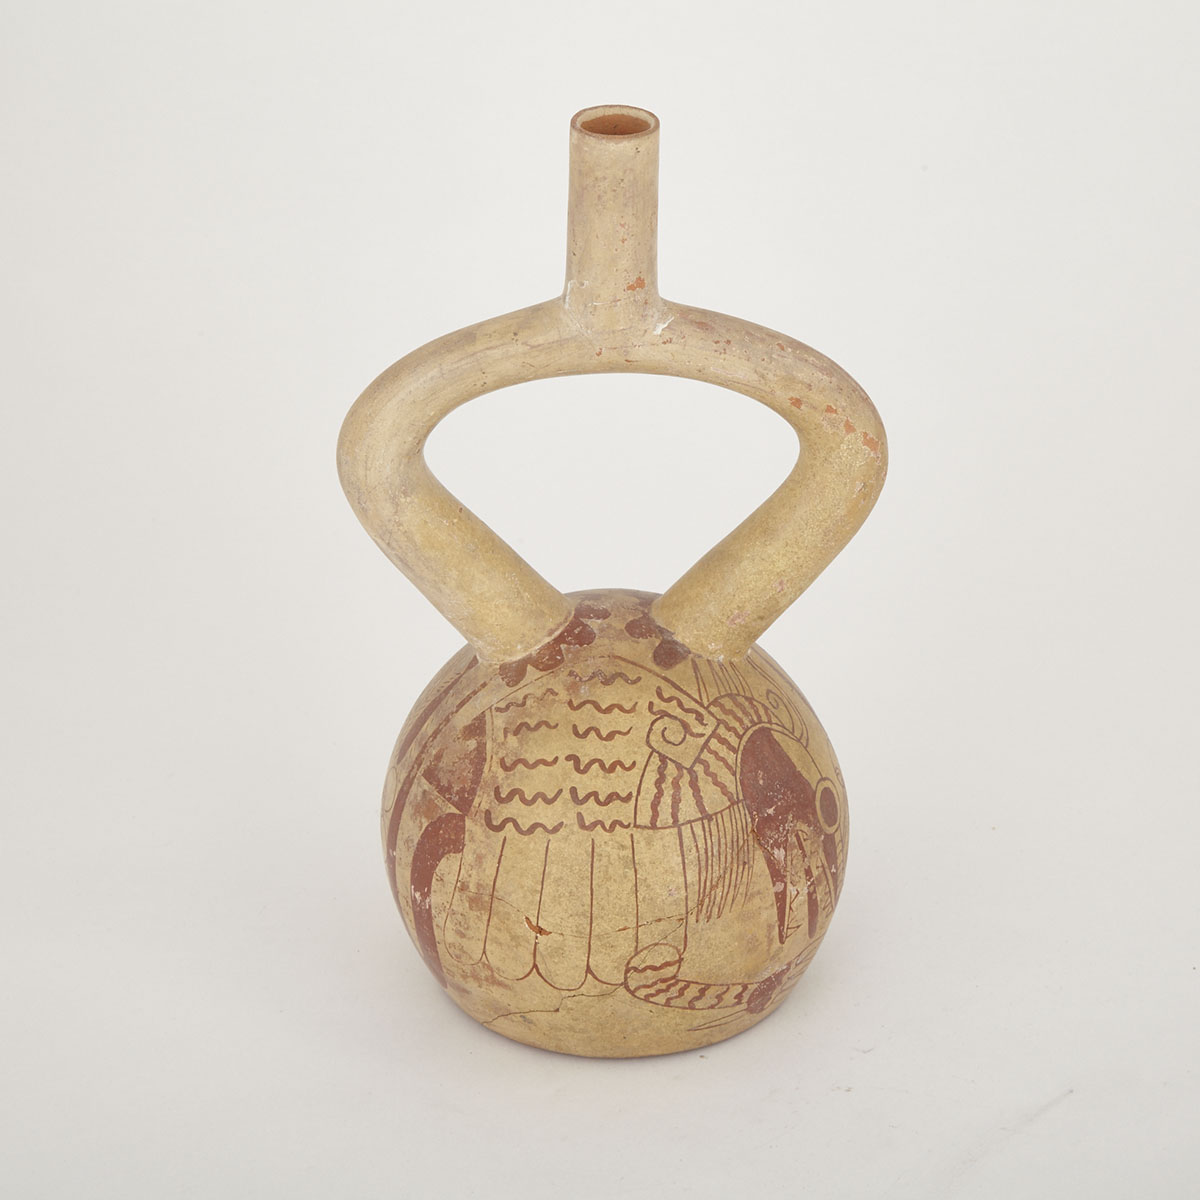 Middle Mochica Pottery Stirrup Spouted Vessel, Peru, 400-600 A.D.